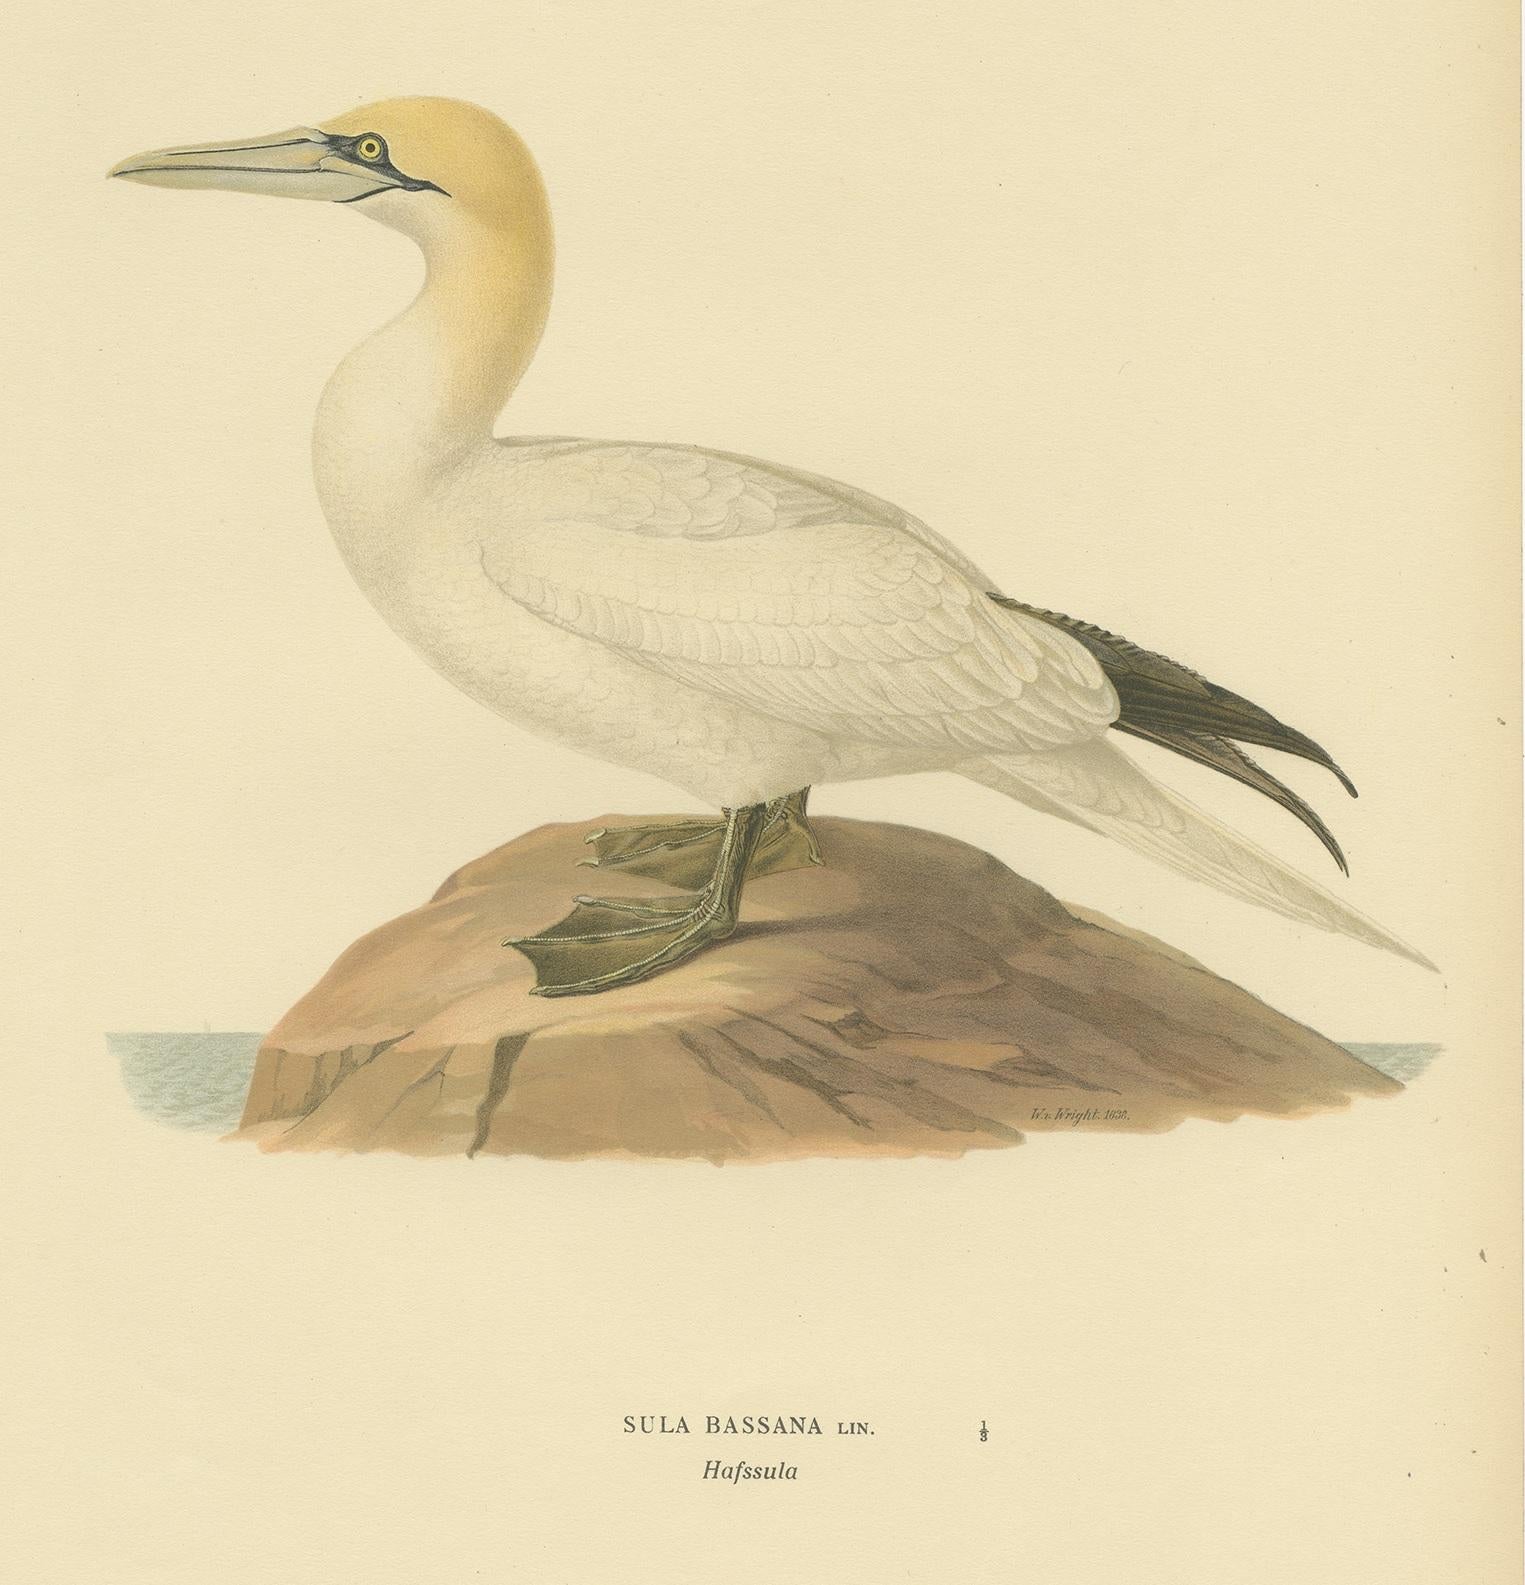 20th Century Antique Bird Print of the Northern Gannet by Von Wright, '1917'